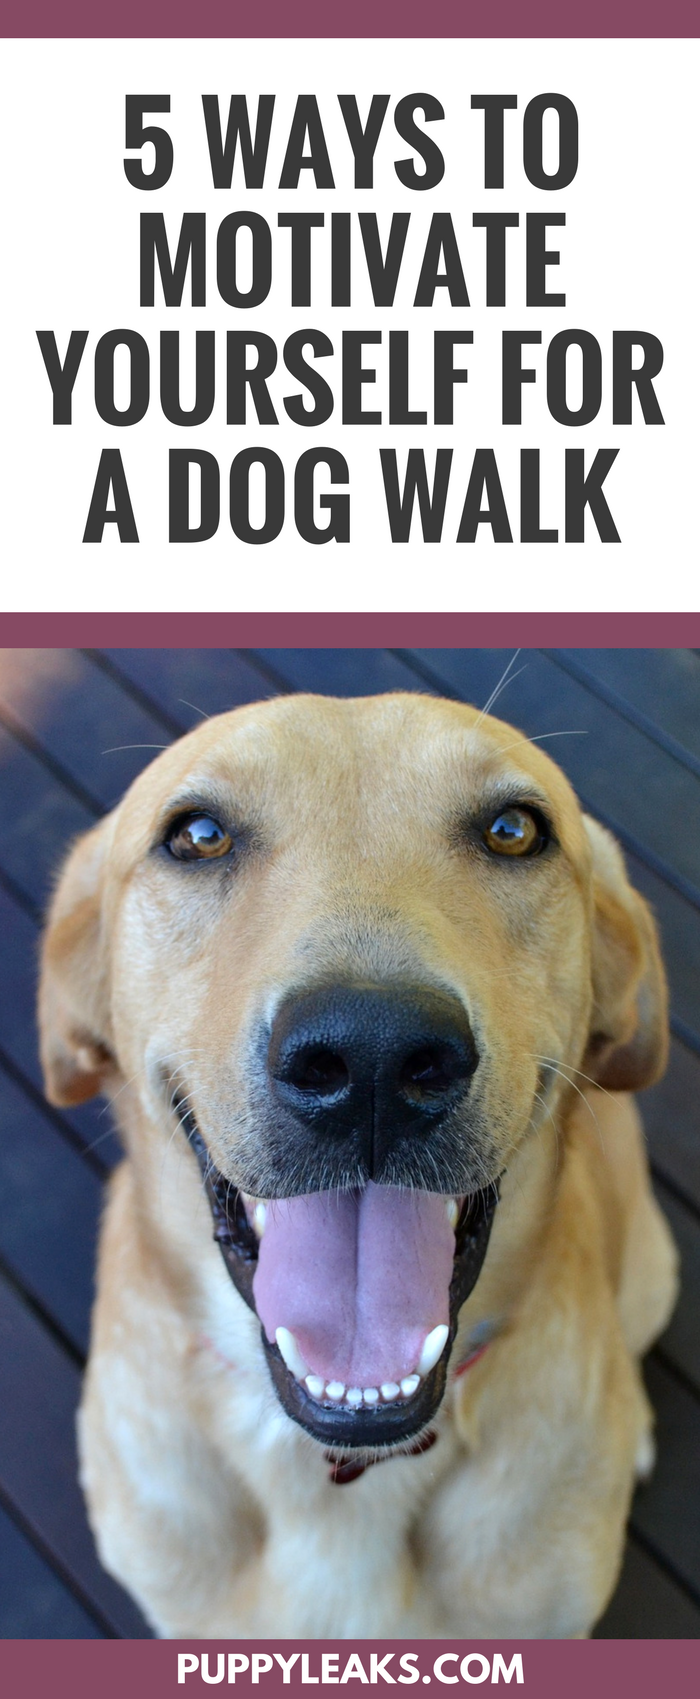 5 façons de se motiver pour une promenade avec son chien